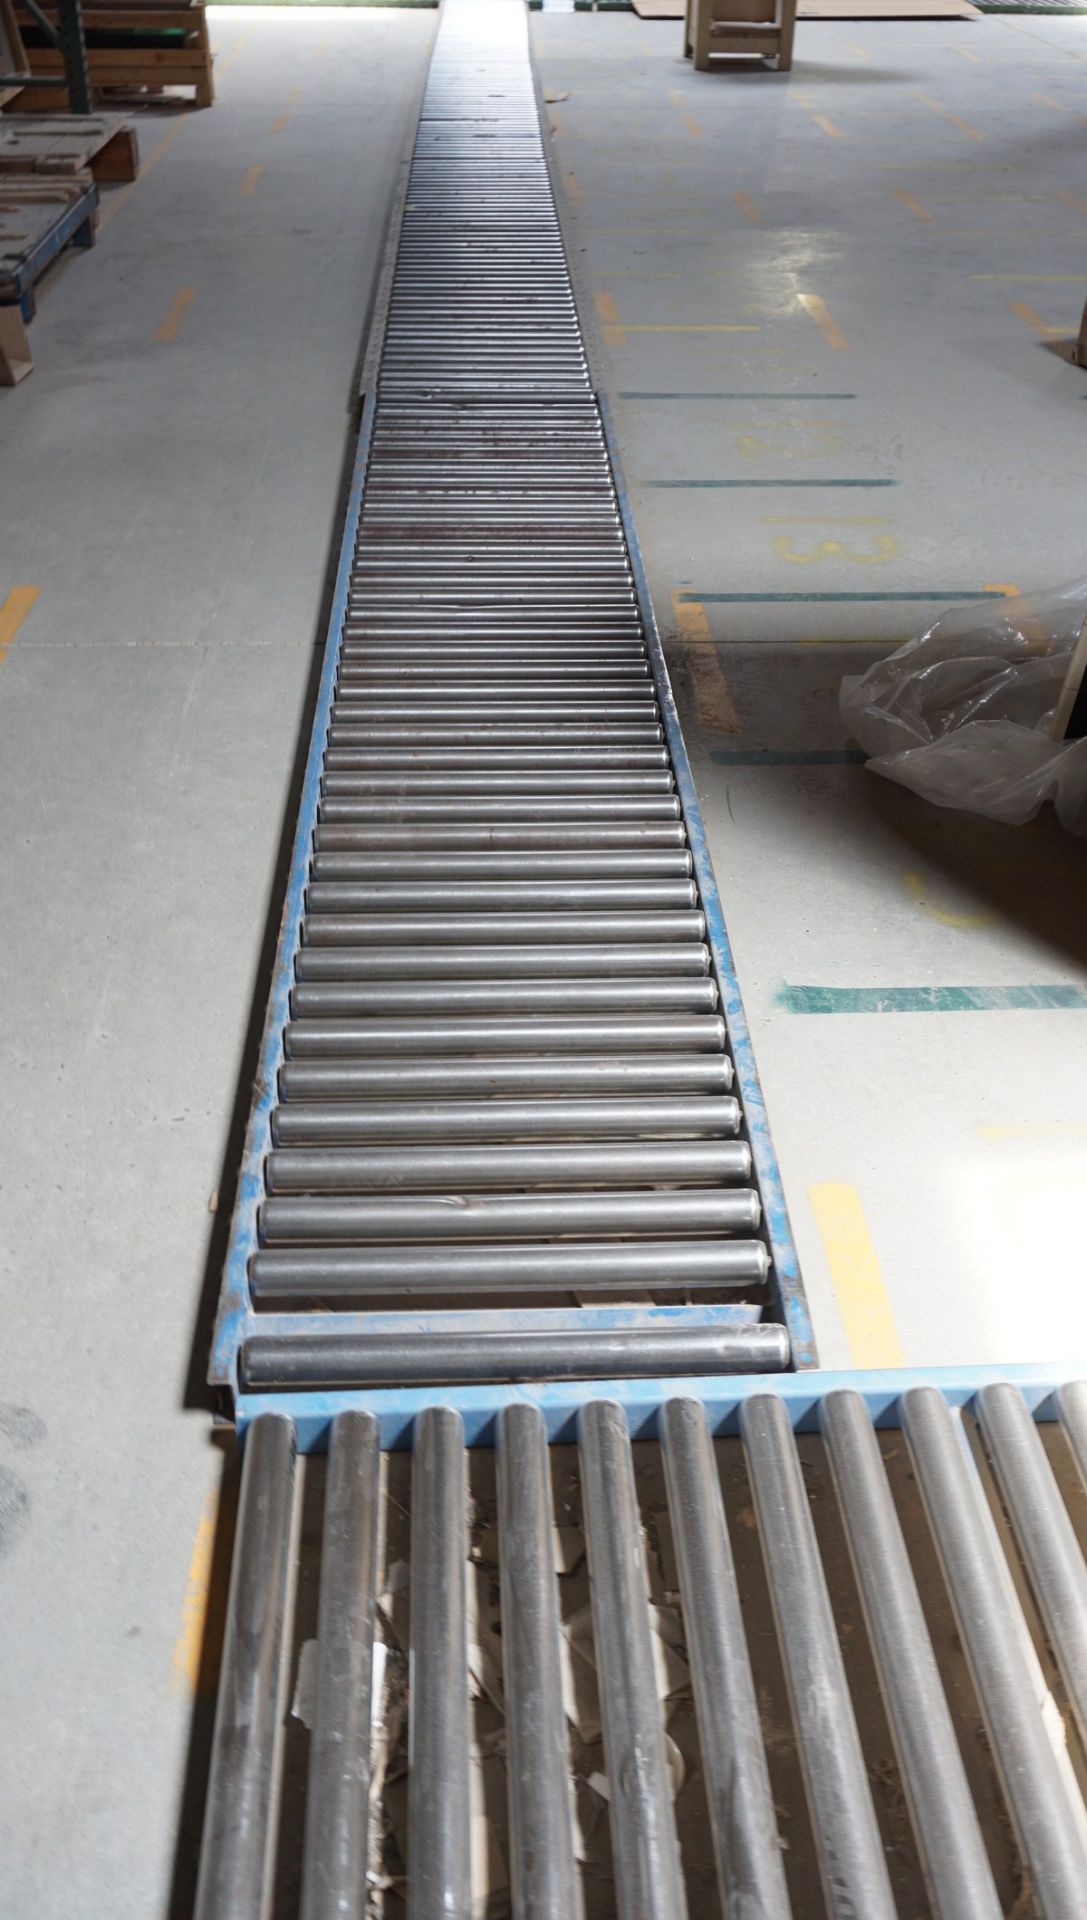 Approx. 470' x 23" W Floor Mounted Roller Conveyor